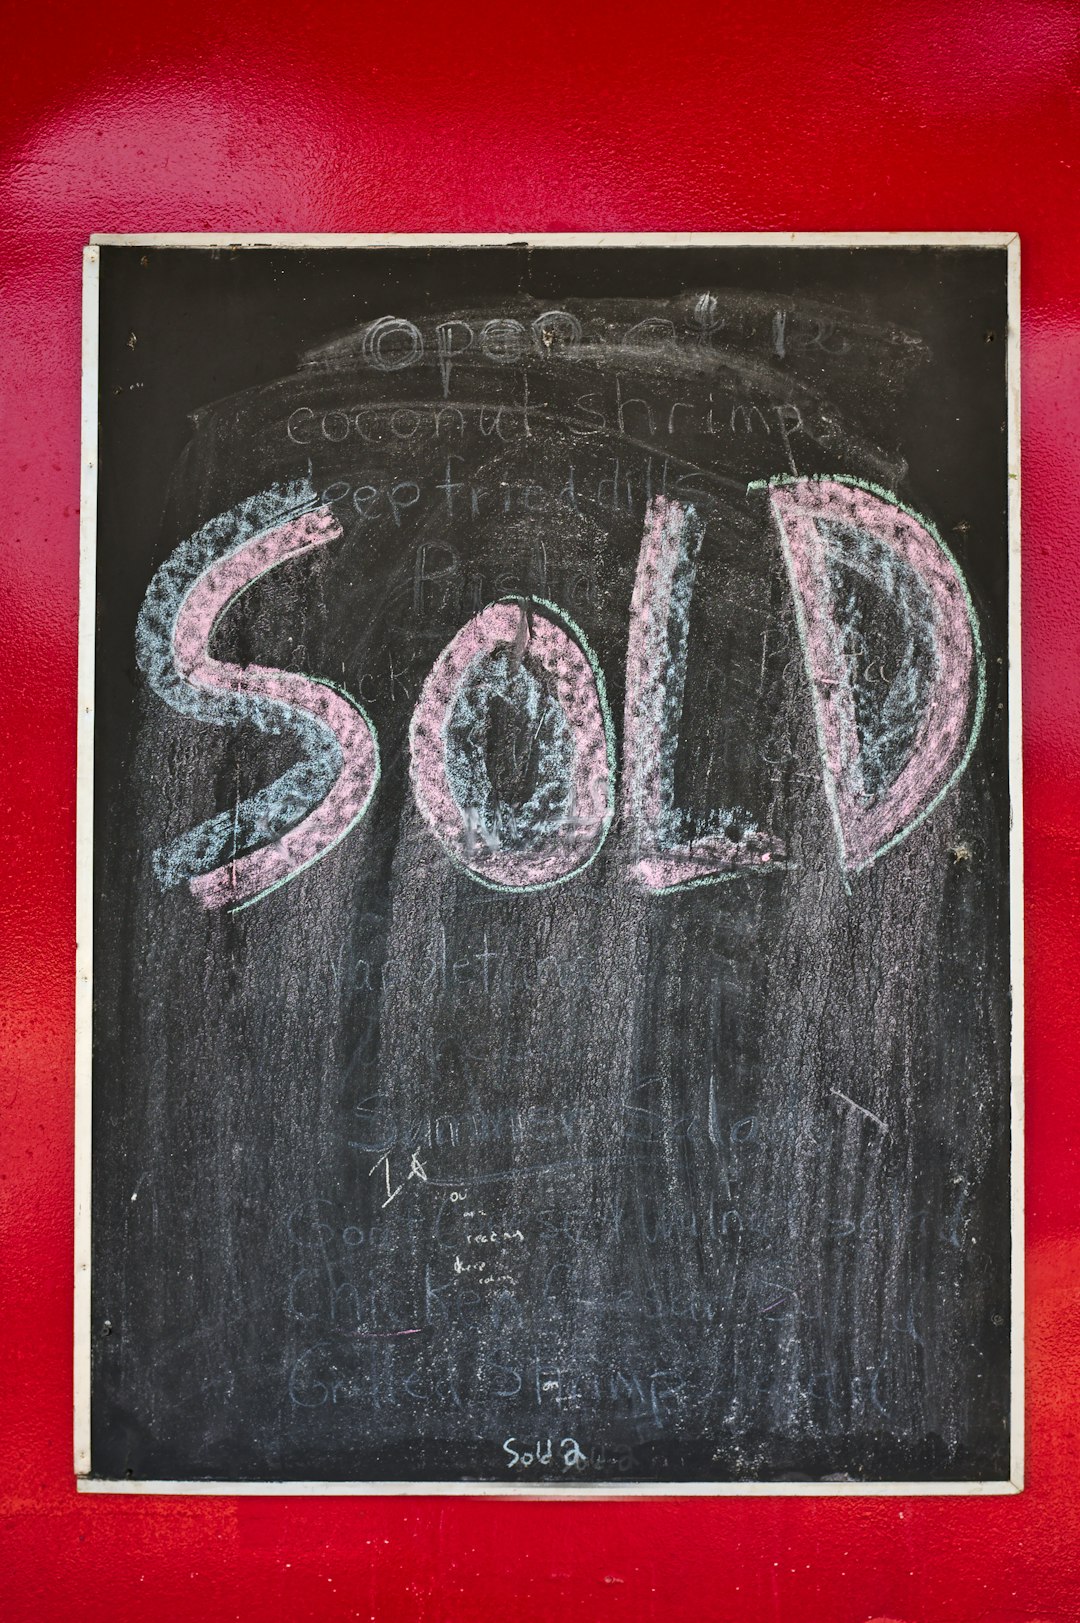 sold on chalkboard